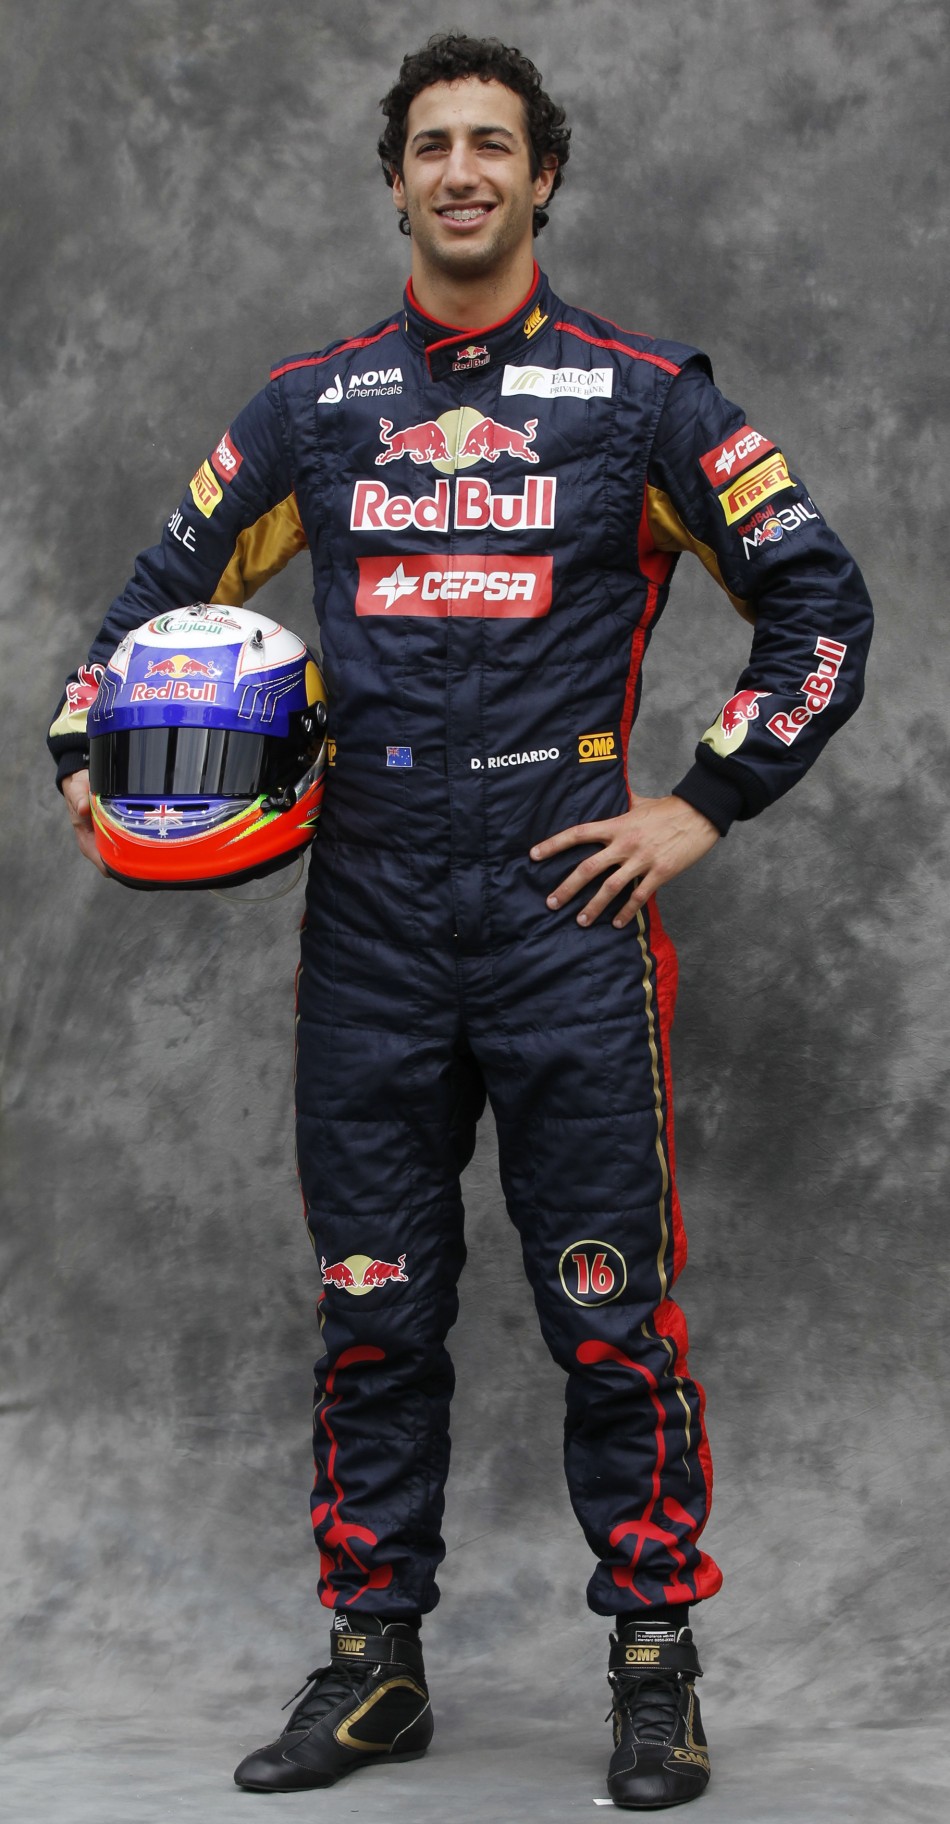 Toro Rosso Formula One driver Ricciardo poses prior to the Australian F1 Grand Prix at the Albert Park circuit in Melbourne